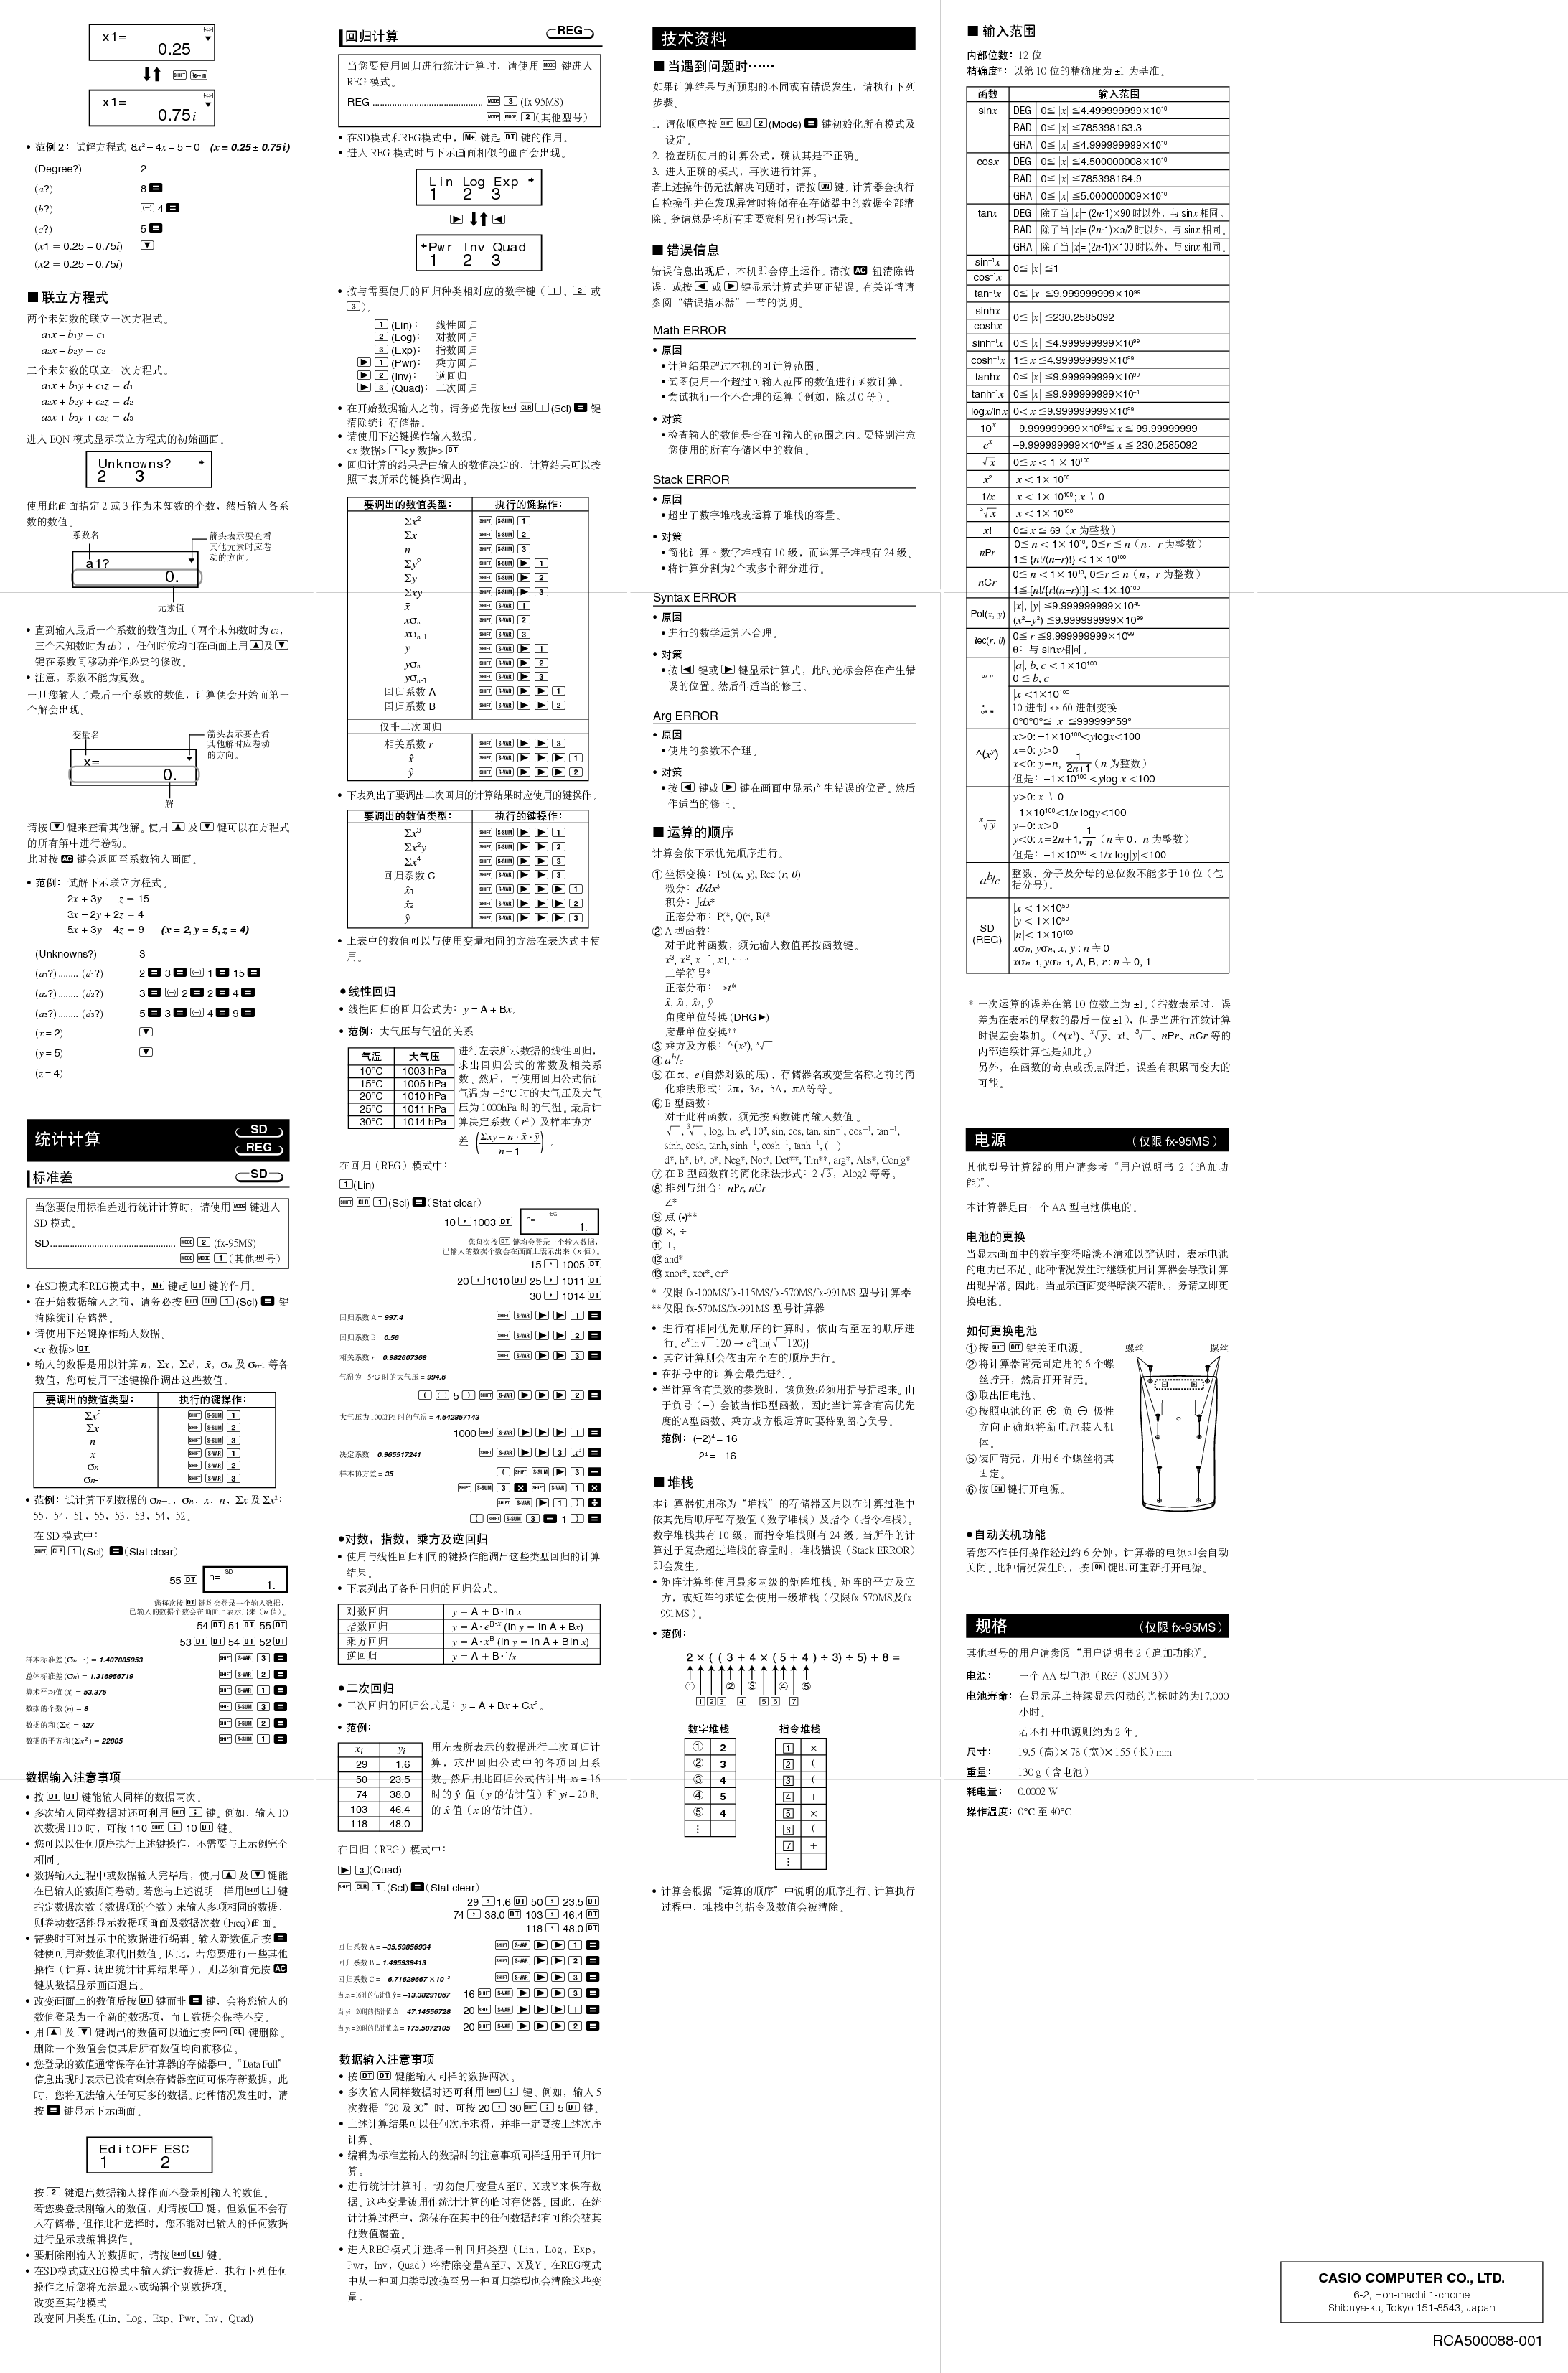 卡西欧 Casio FX-100MS 使用说明书 第1页